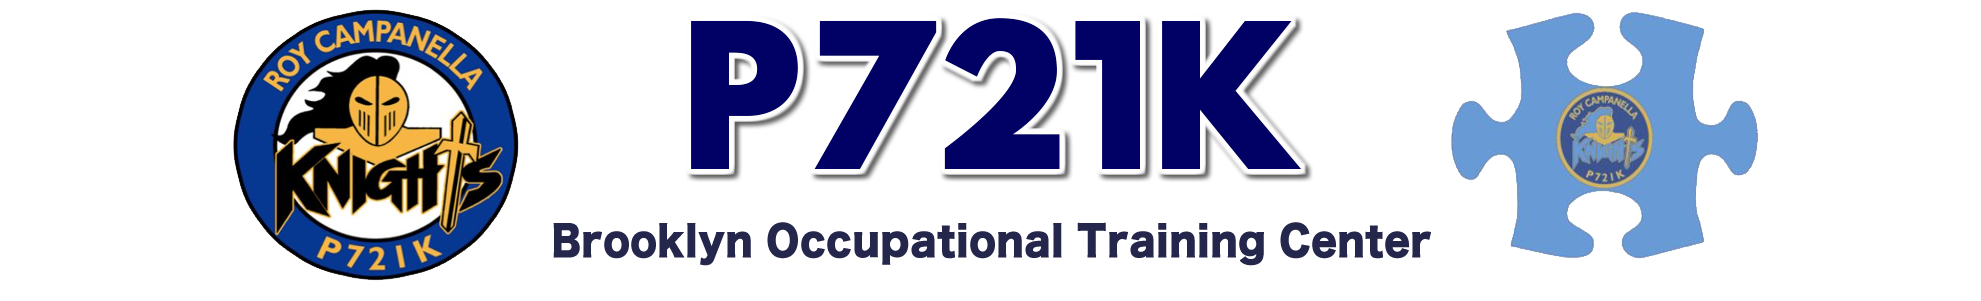 P721K Logo